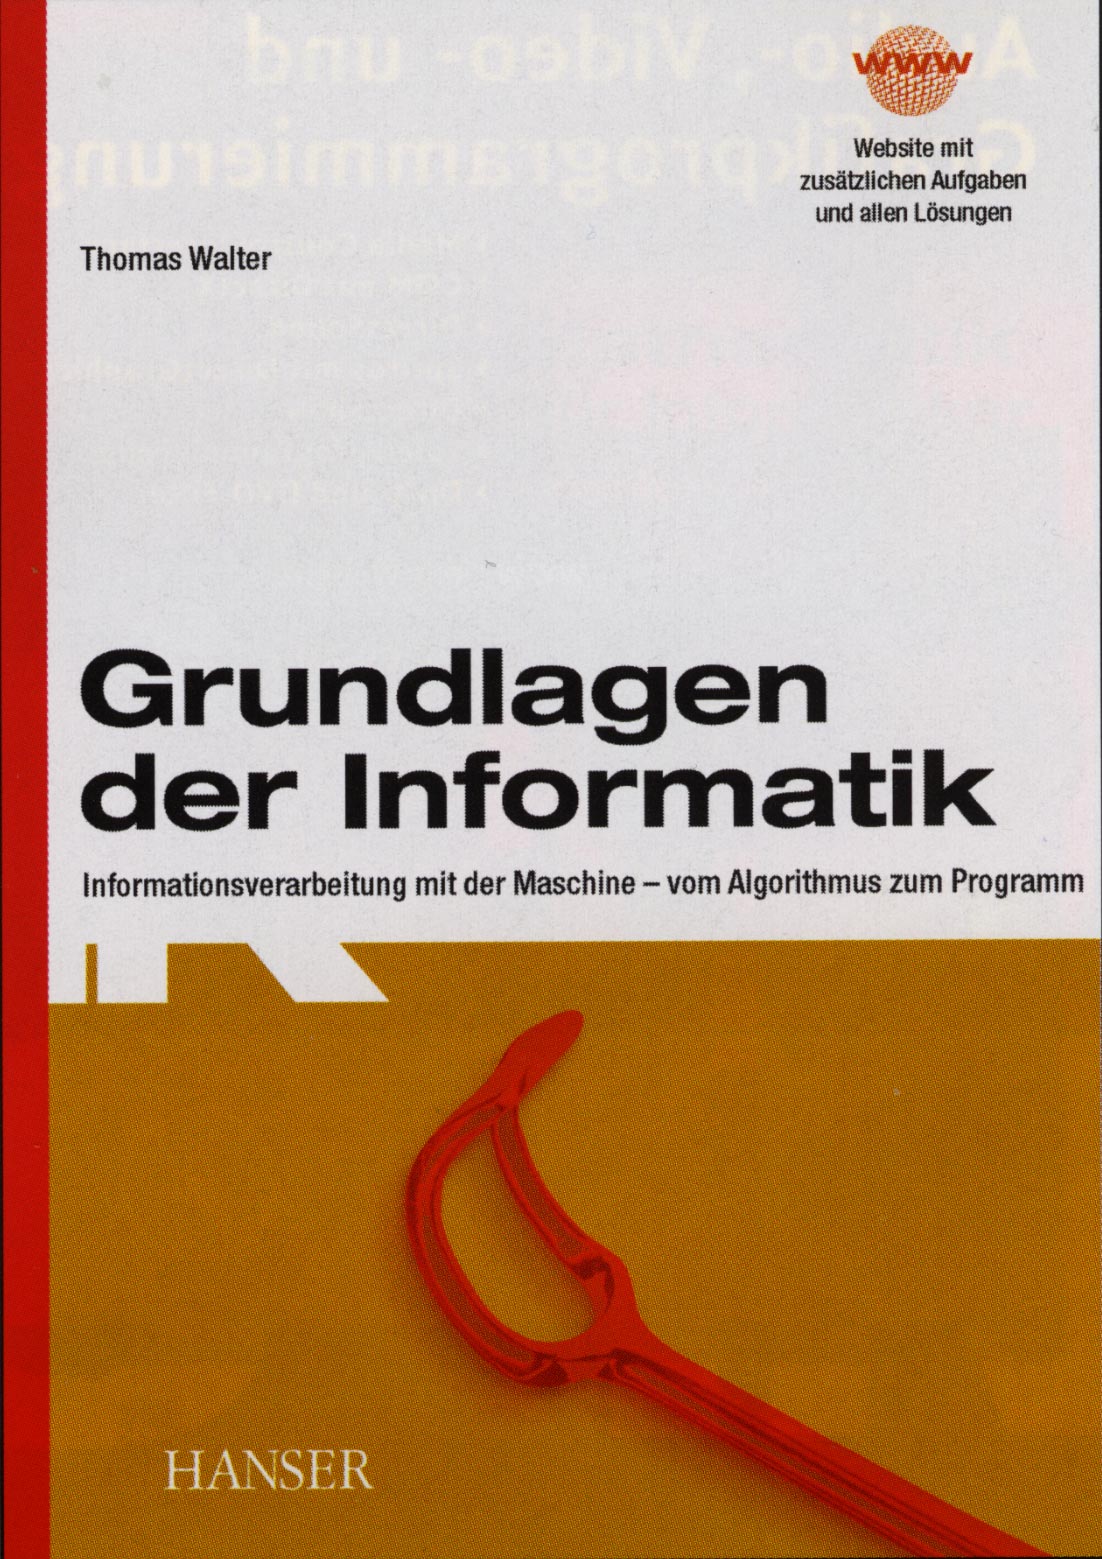 Grundlagen der Informatik, Hanser-Verlag, ISBN 3-446-22245-6